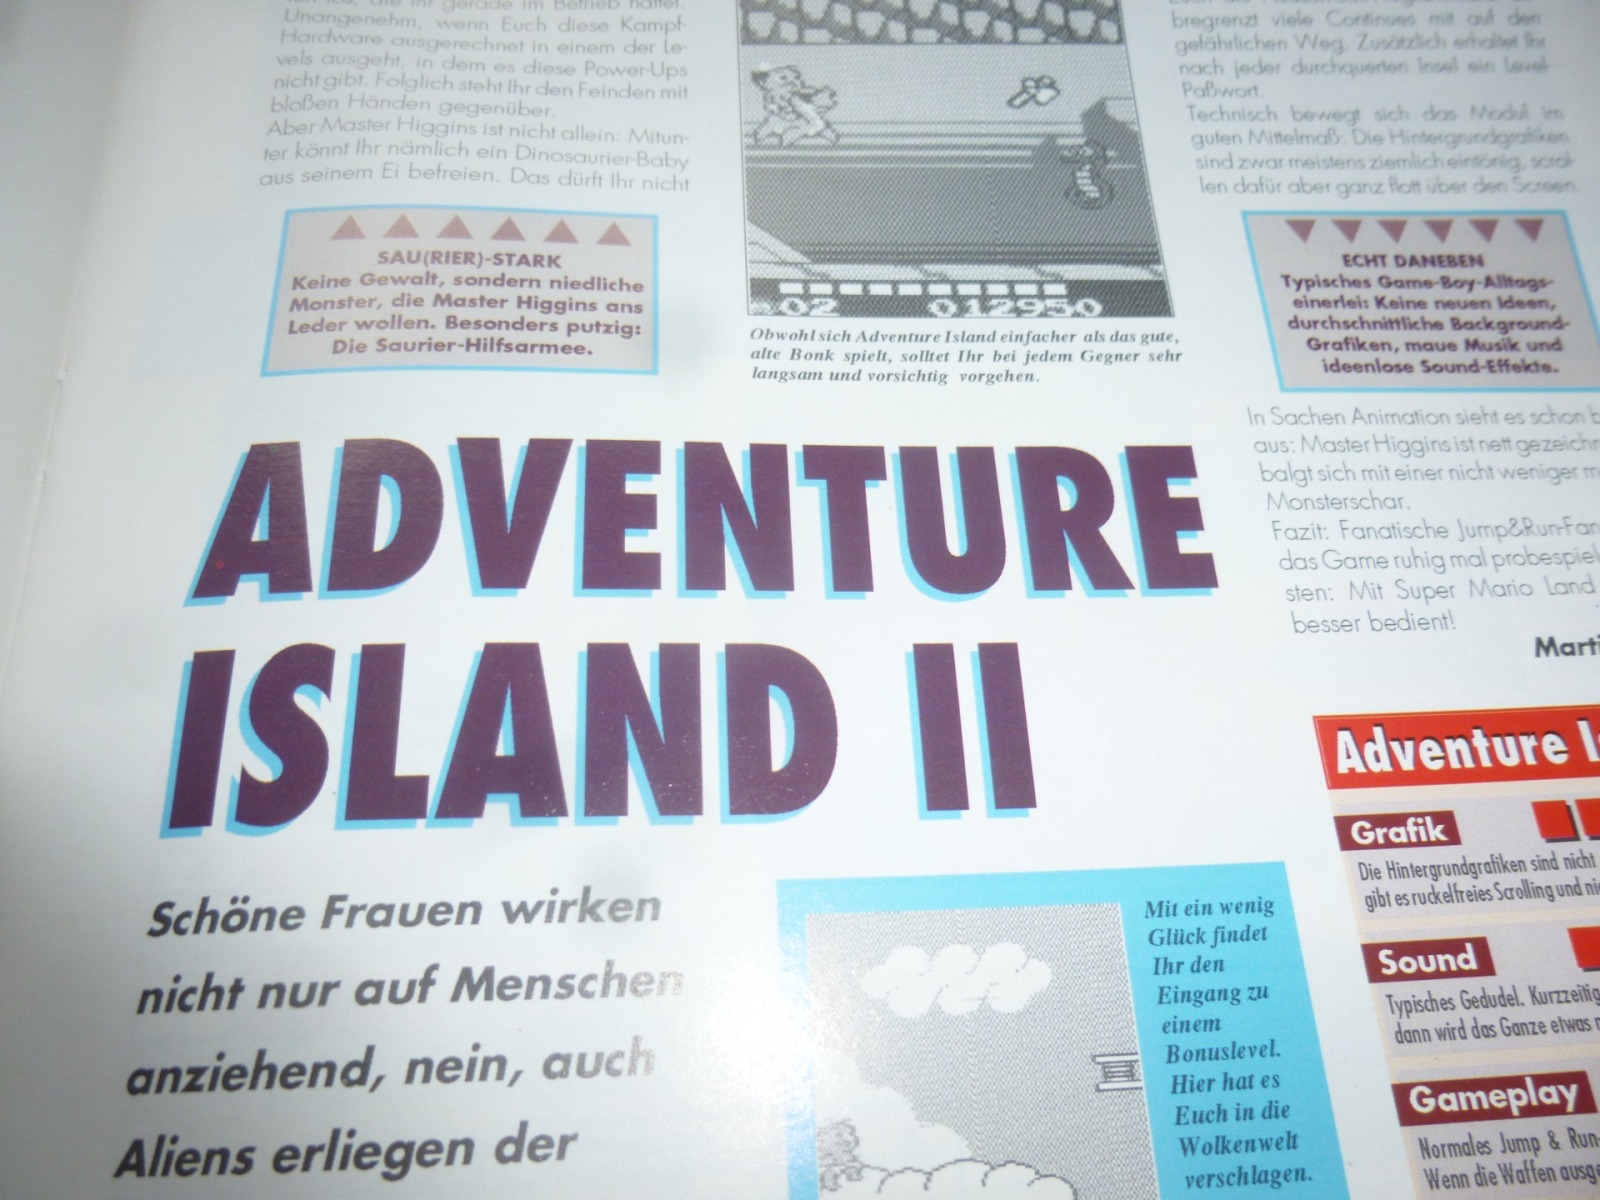 TOTAL Das unabhängige Magazin - 100 Nintendo - Ausgabe 7/93 1993 17